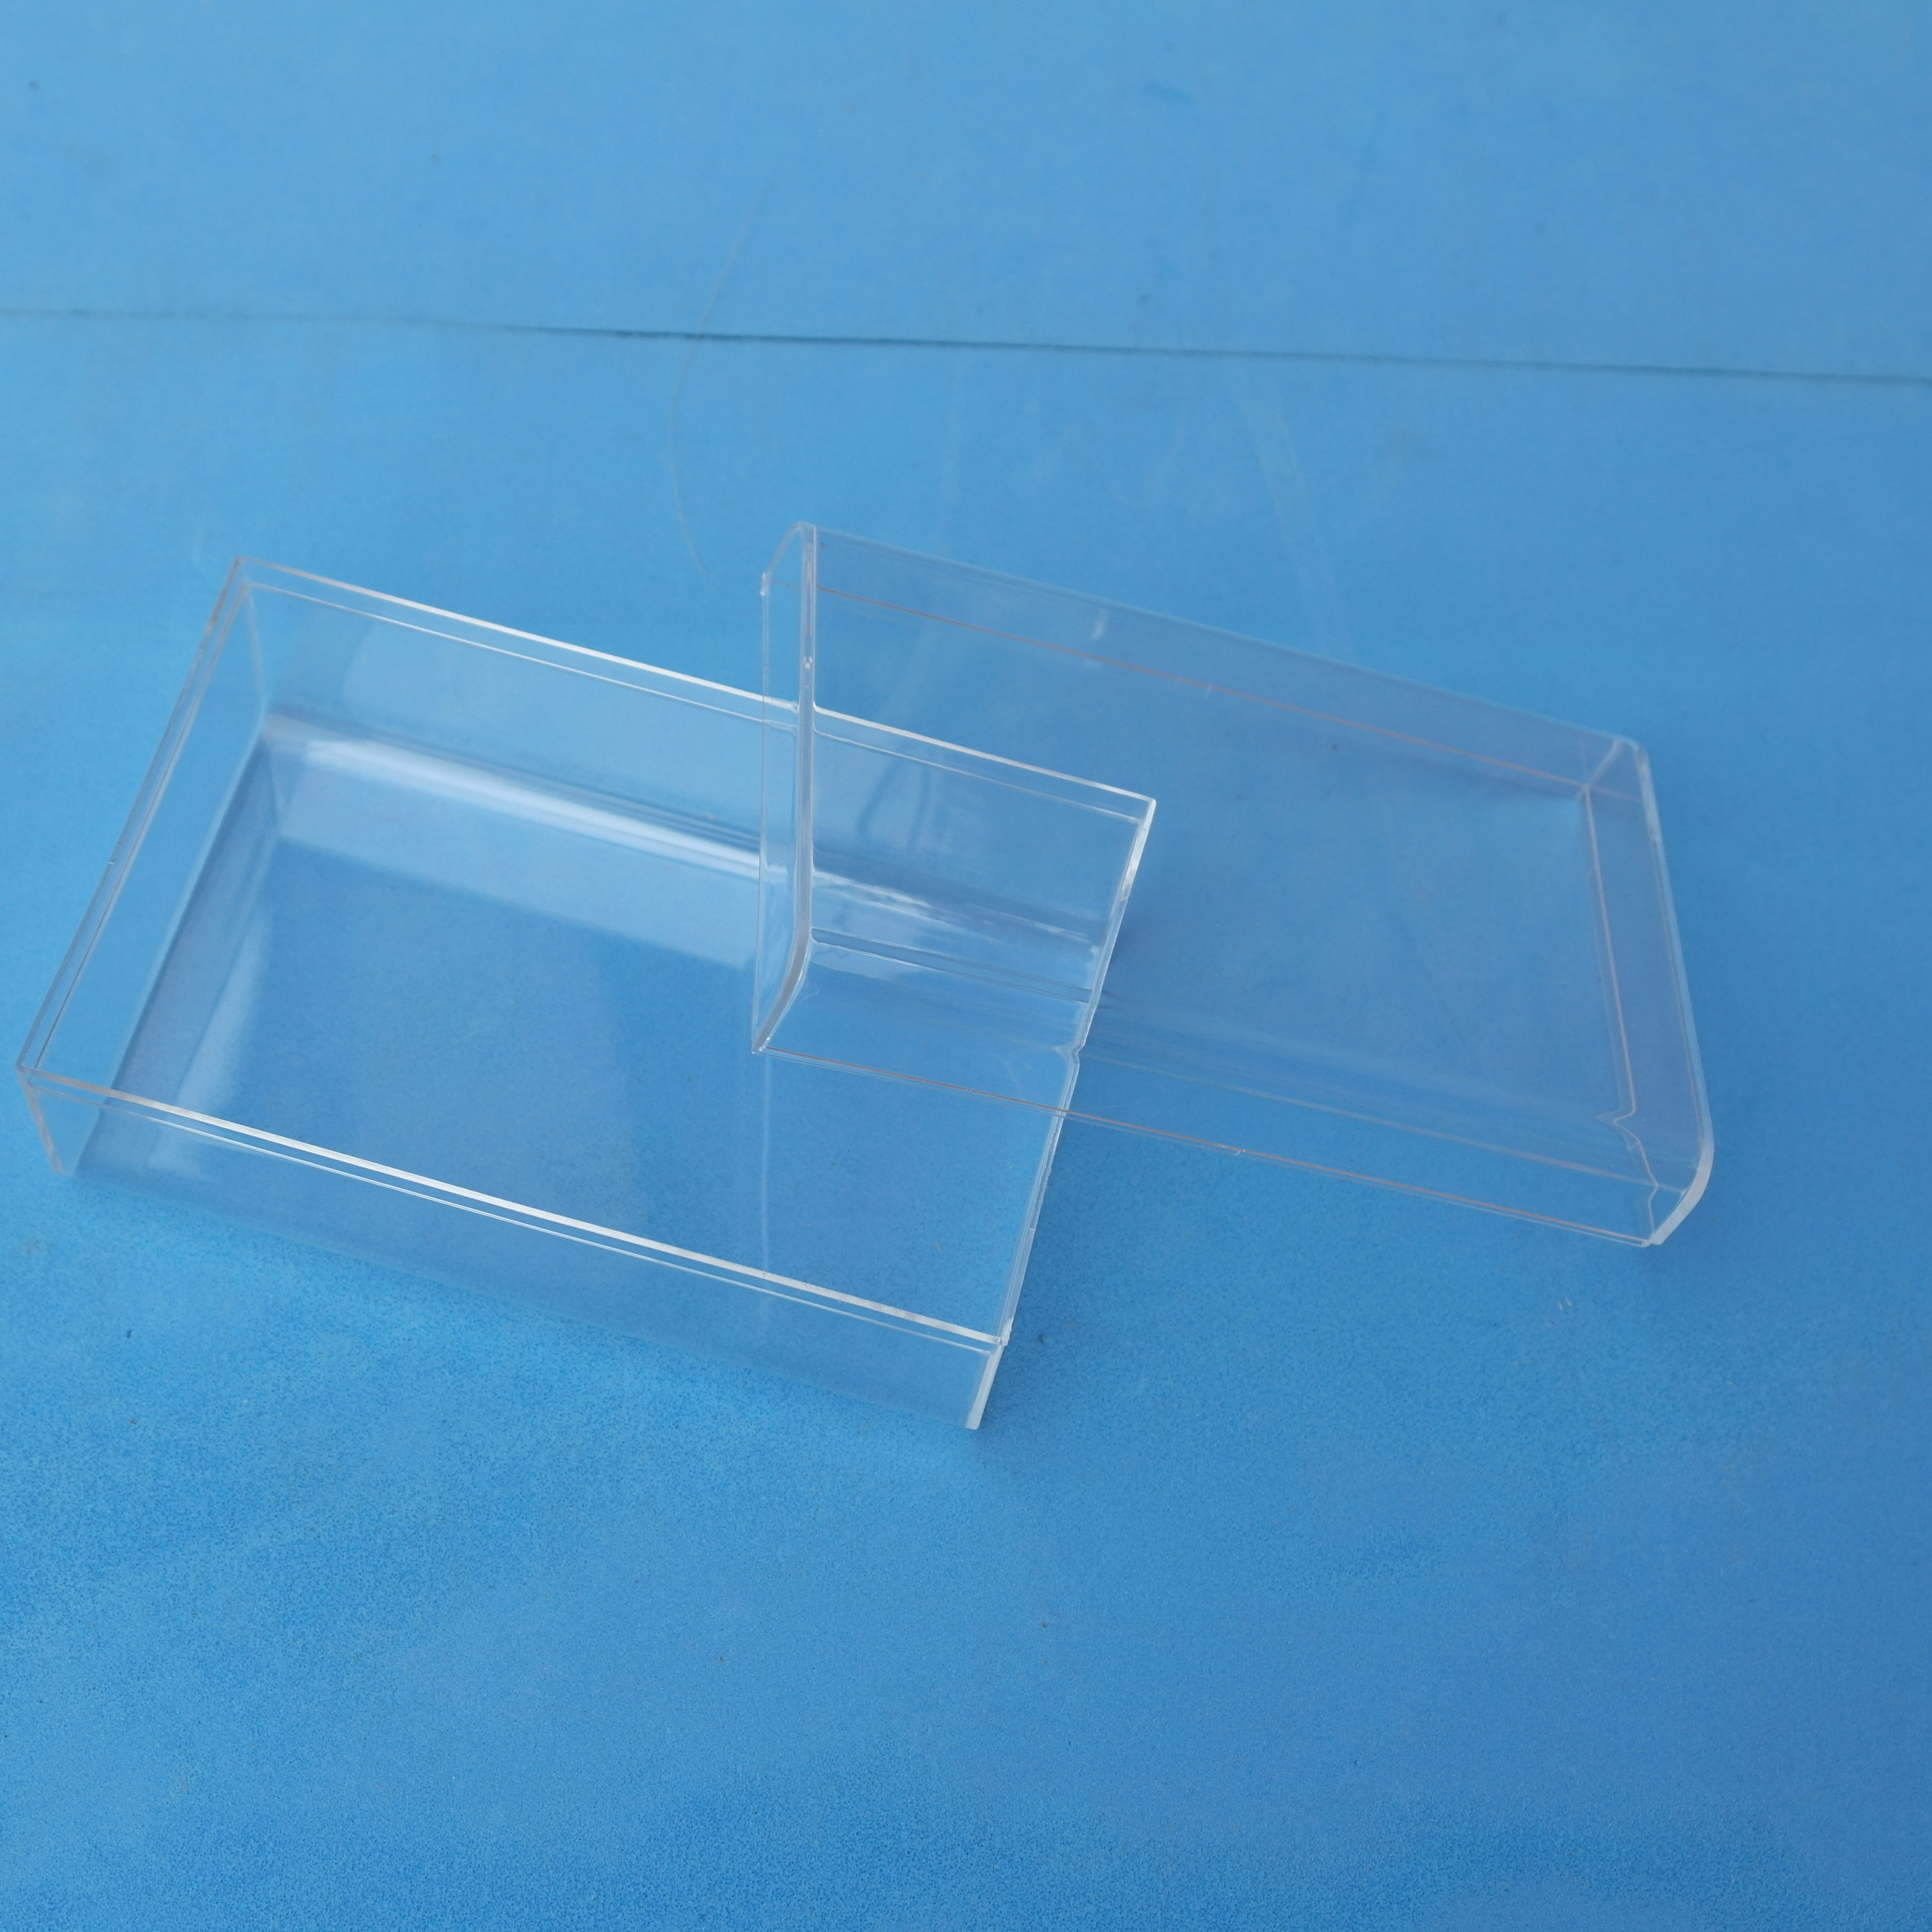 深圳透明塑胶盒厂家价格-供应商报价-批发图片